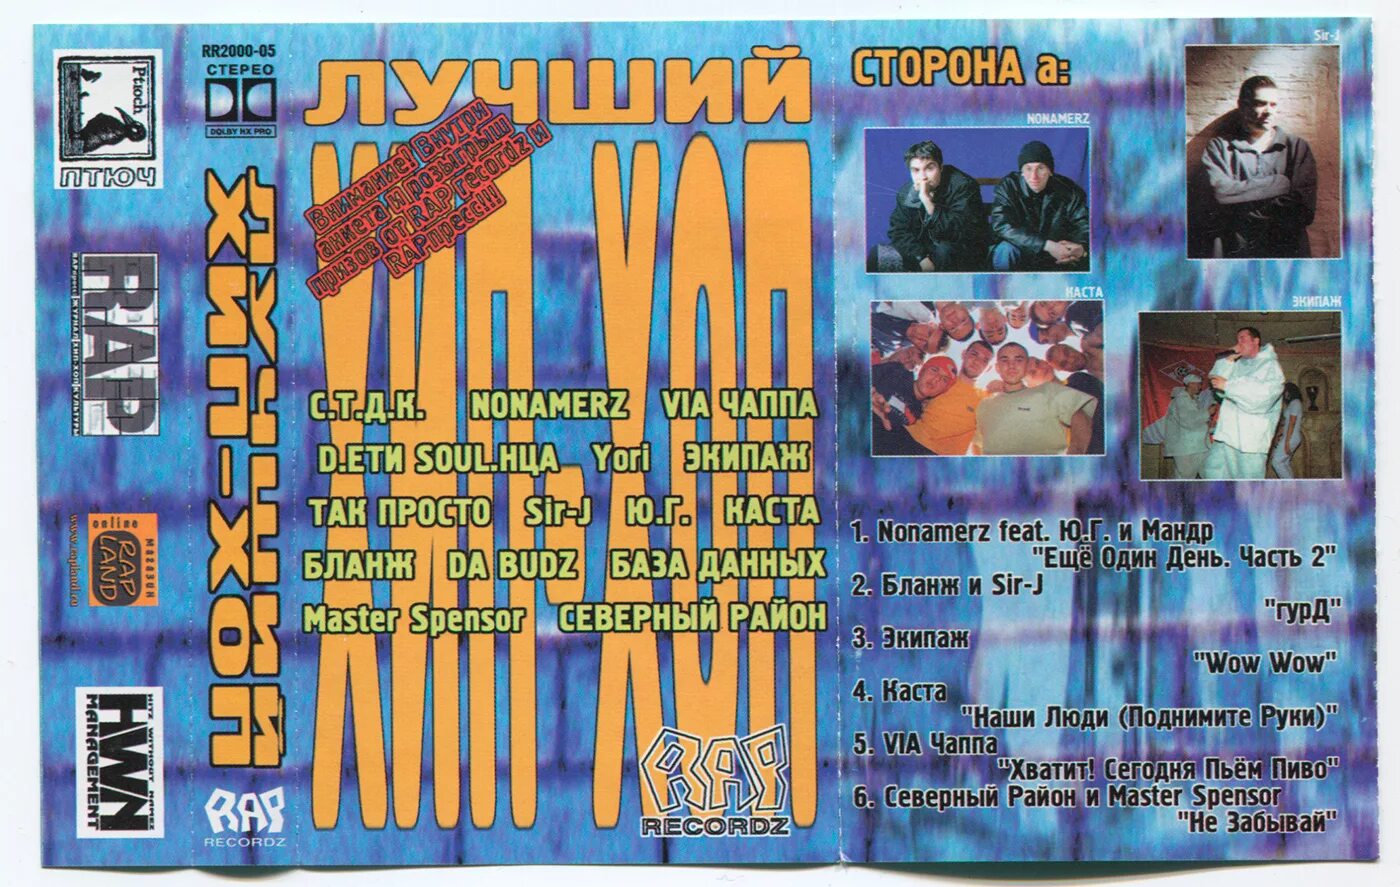 Лучший русский рэп 2000. Хип хоп сборники 2000-х. Рэп сборники 90-х. Русский хип хоп 2000. Русский рэп 2000.